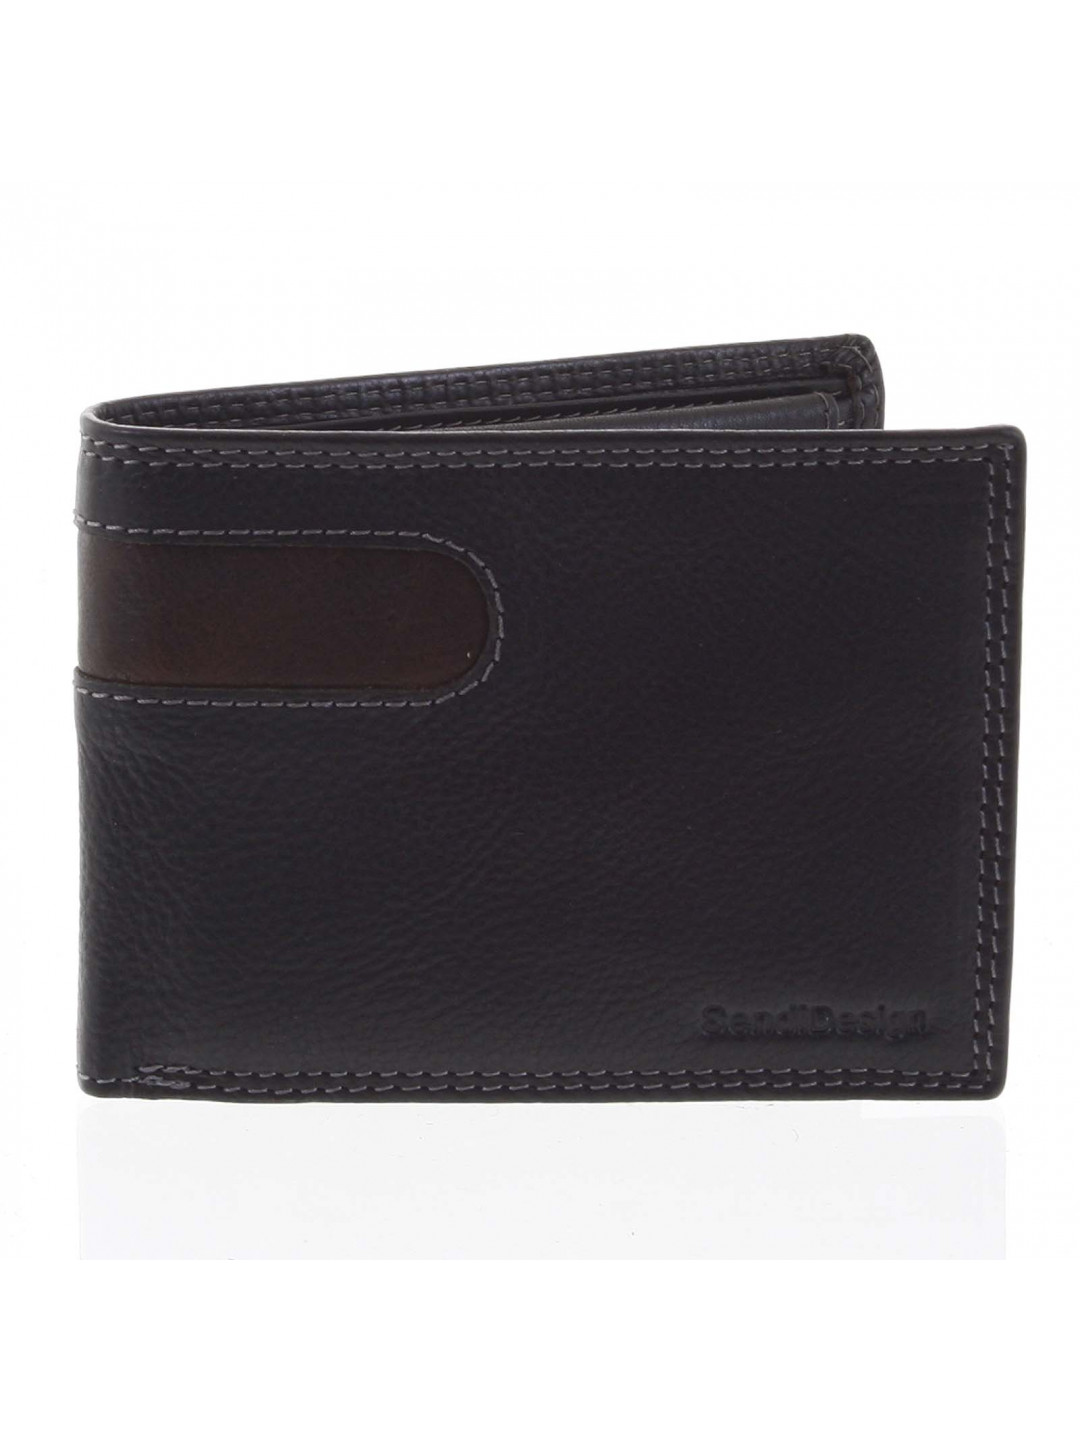 Pánská kožená peněženka tenká černá – SendiDesign Elohi